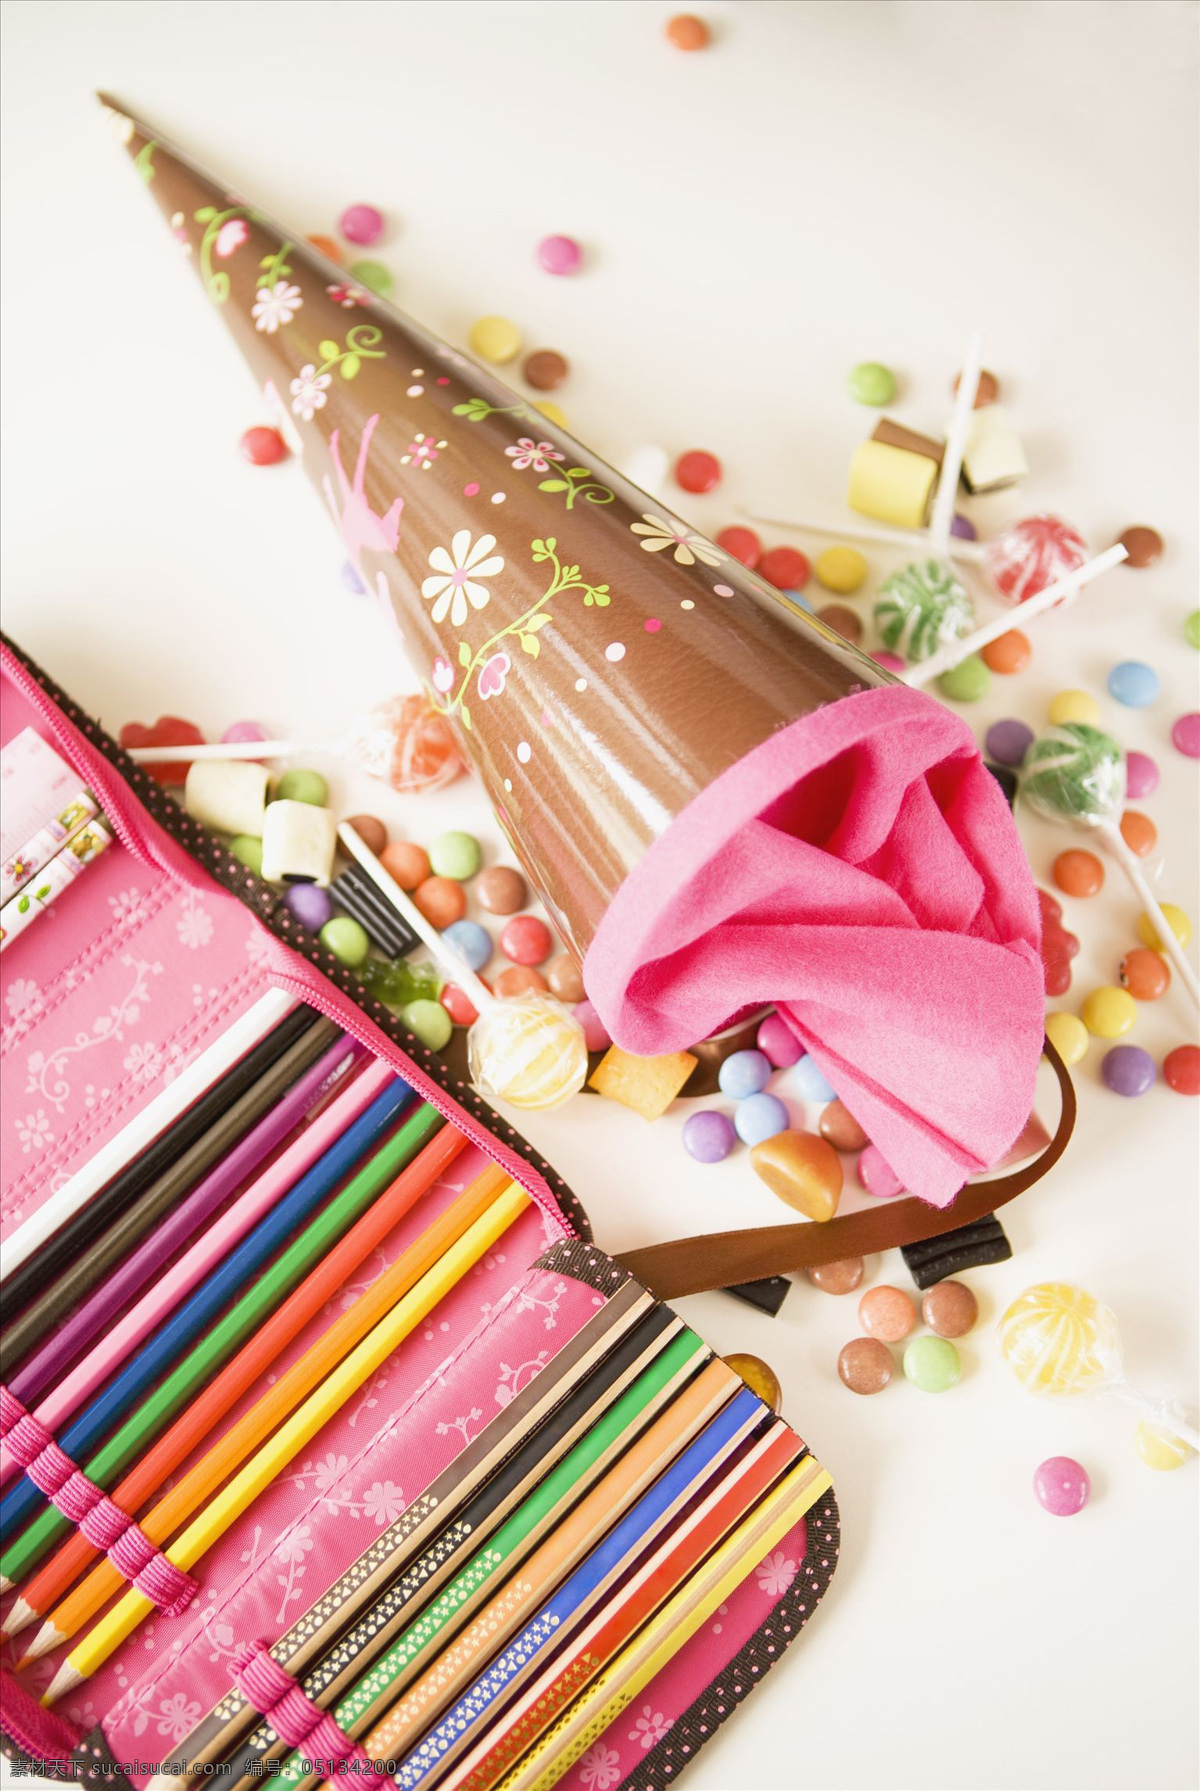 棒棒糖 彩笔 彩色 多彩 粉红色 粉色 画笔 蜡笔 少女 棒糖 多种多样 各种各样 浪漫 铅笔 糖果 特写 甜 甜食 甜味 条理 文具盒 许多 学习用品 颜料 美术绘画 文化艺术 矢量图 其他矢量图